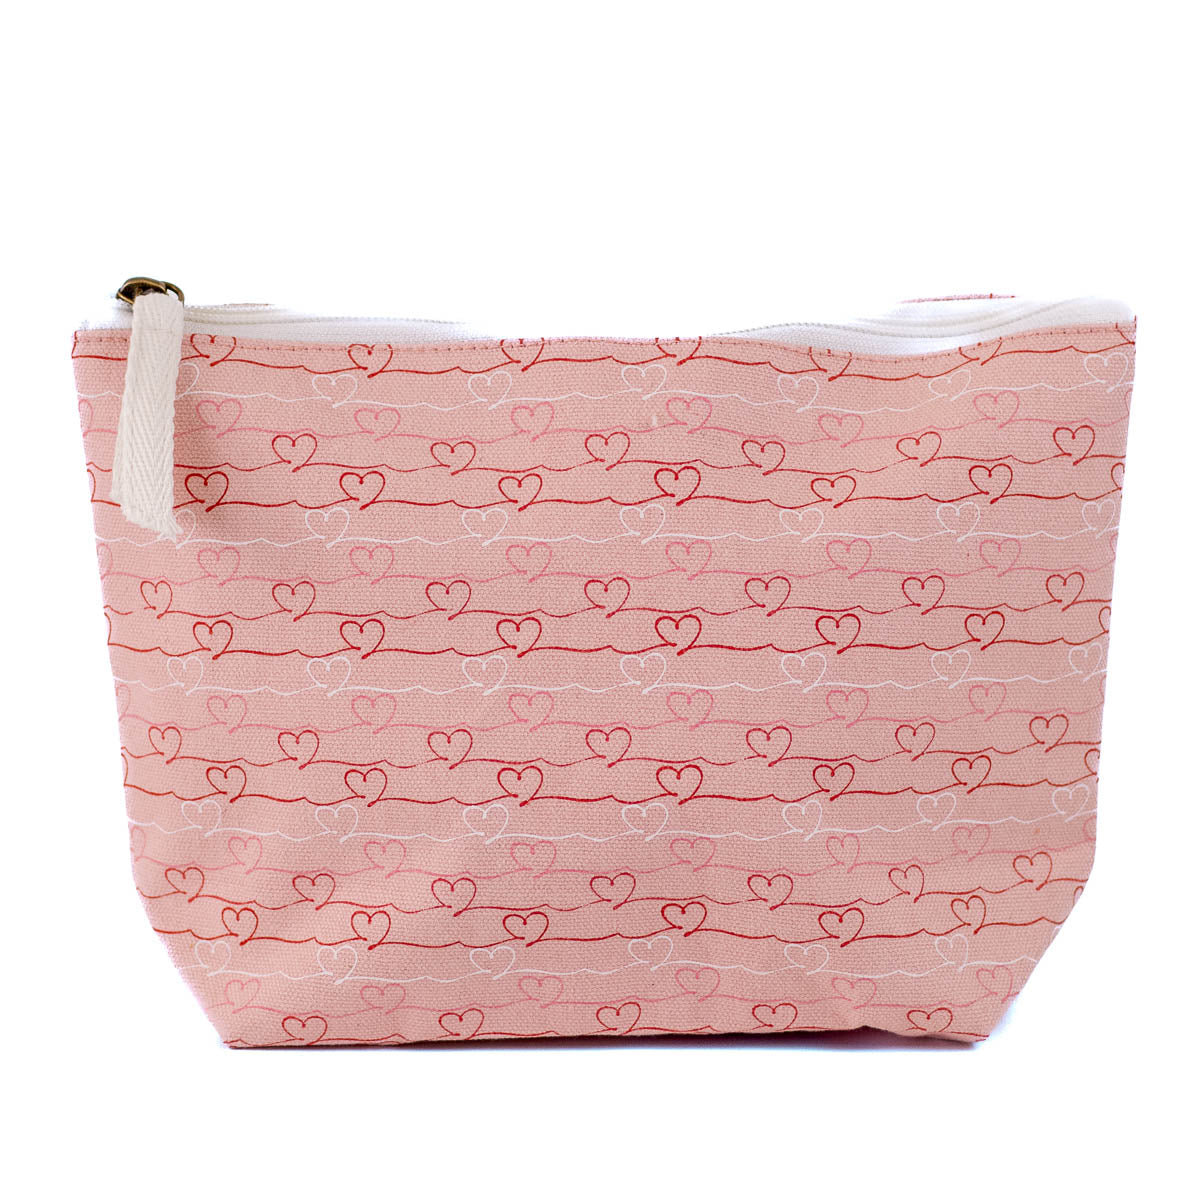 Heartstrings Cosmetic Bag